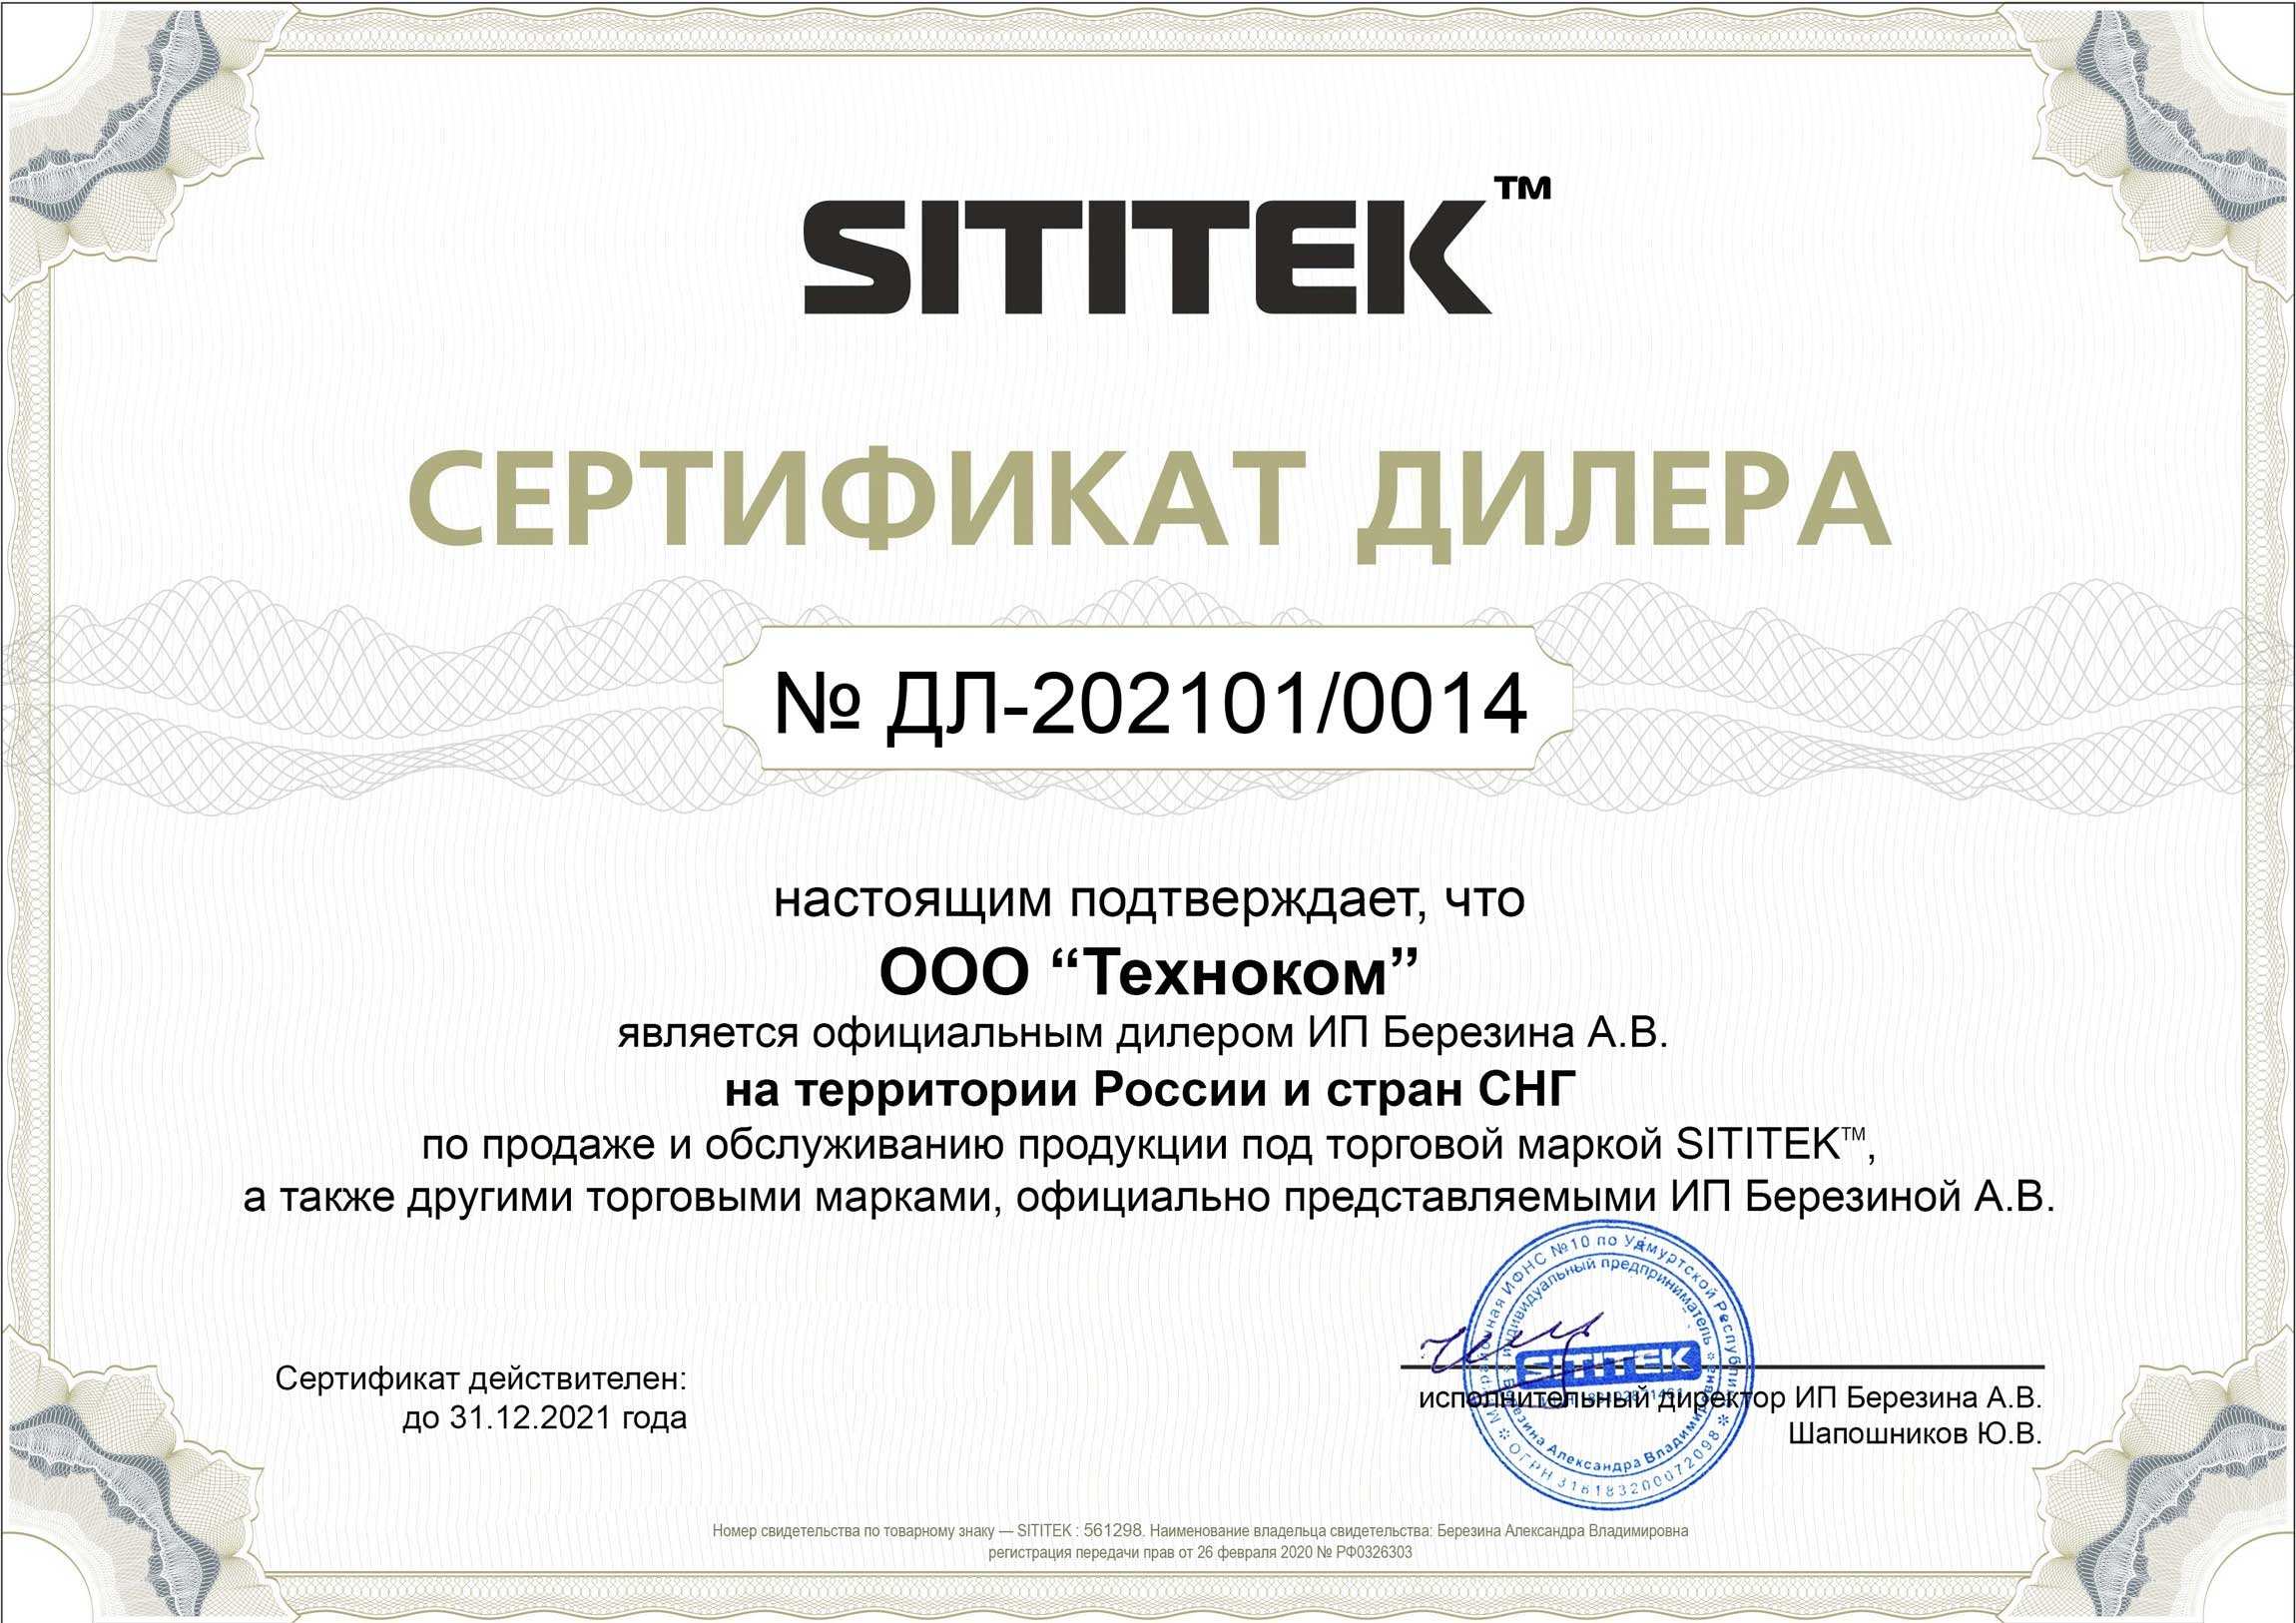 Сертификат дилера на продажу и обслуживание продукции компании SITITEK в России и СНГ